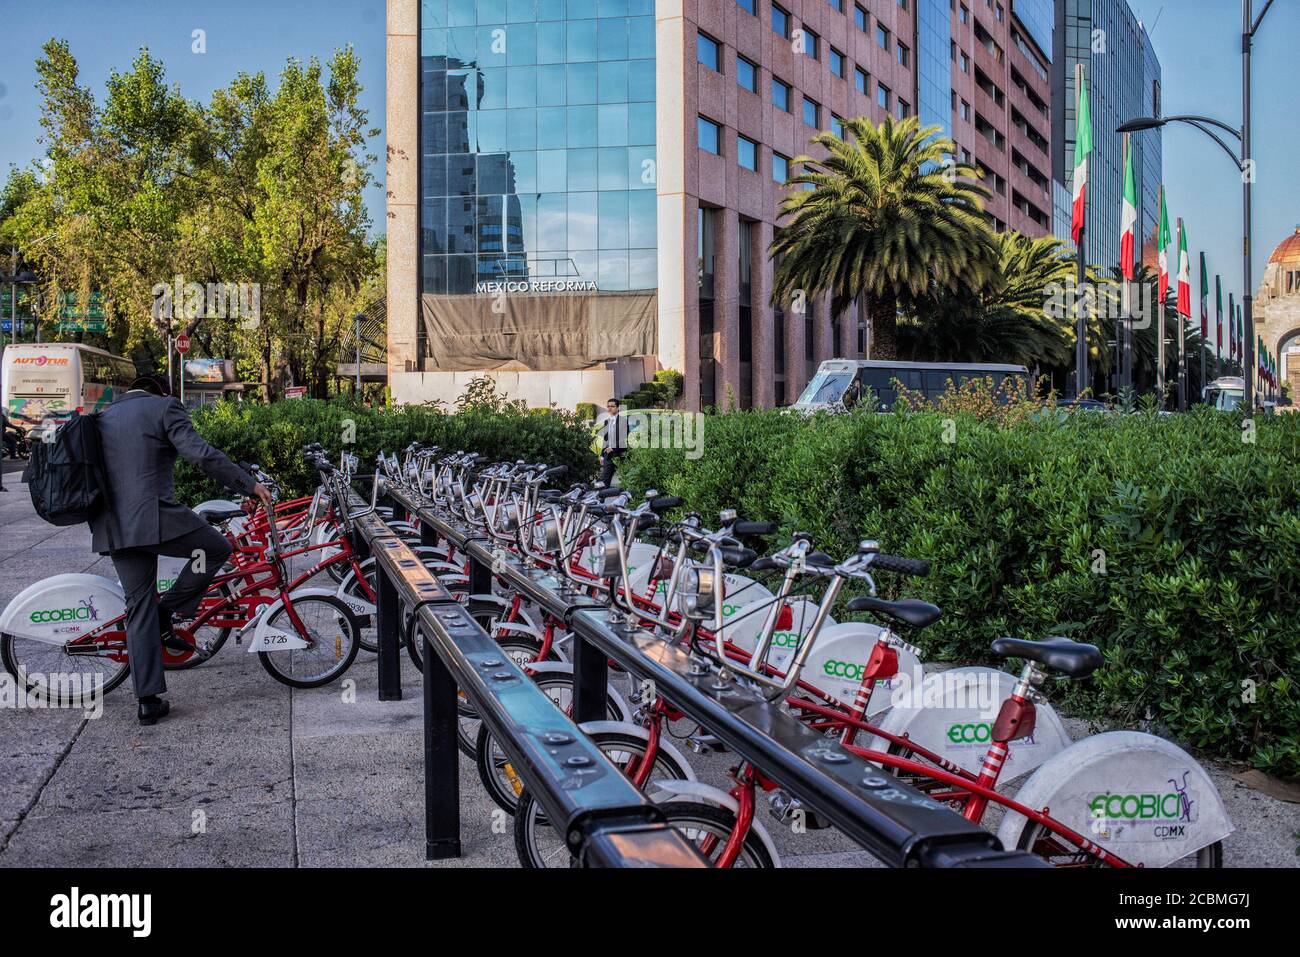 América del Norte - México, ciudad capital Ciudad de México: Un hombre se prepara para montar un ECOBICI que es un sistema público de bicicletas compartidas de transporte alternativo Foto de stock